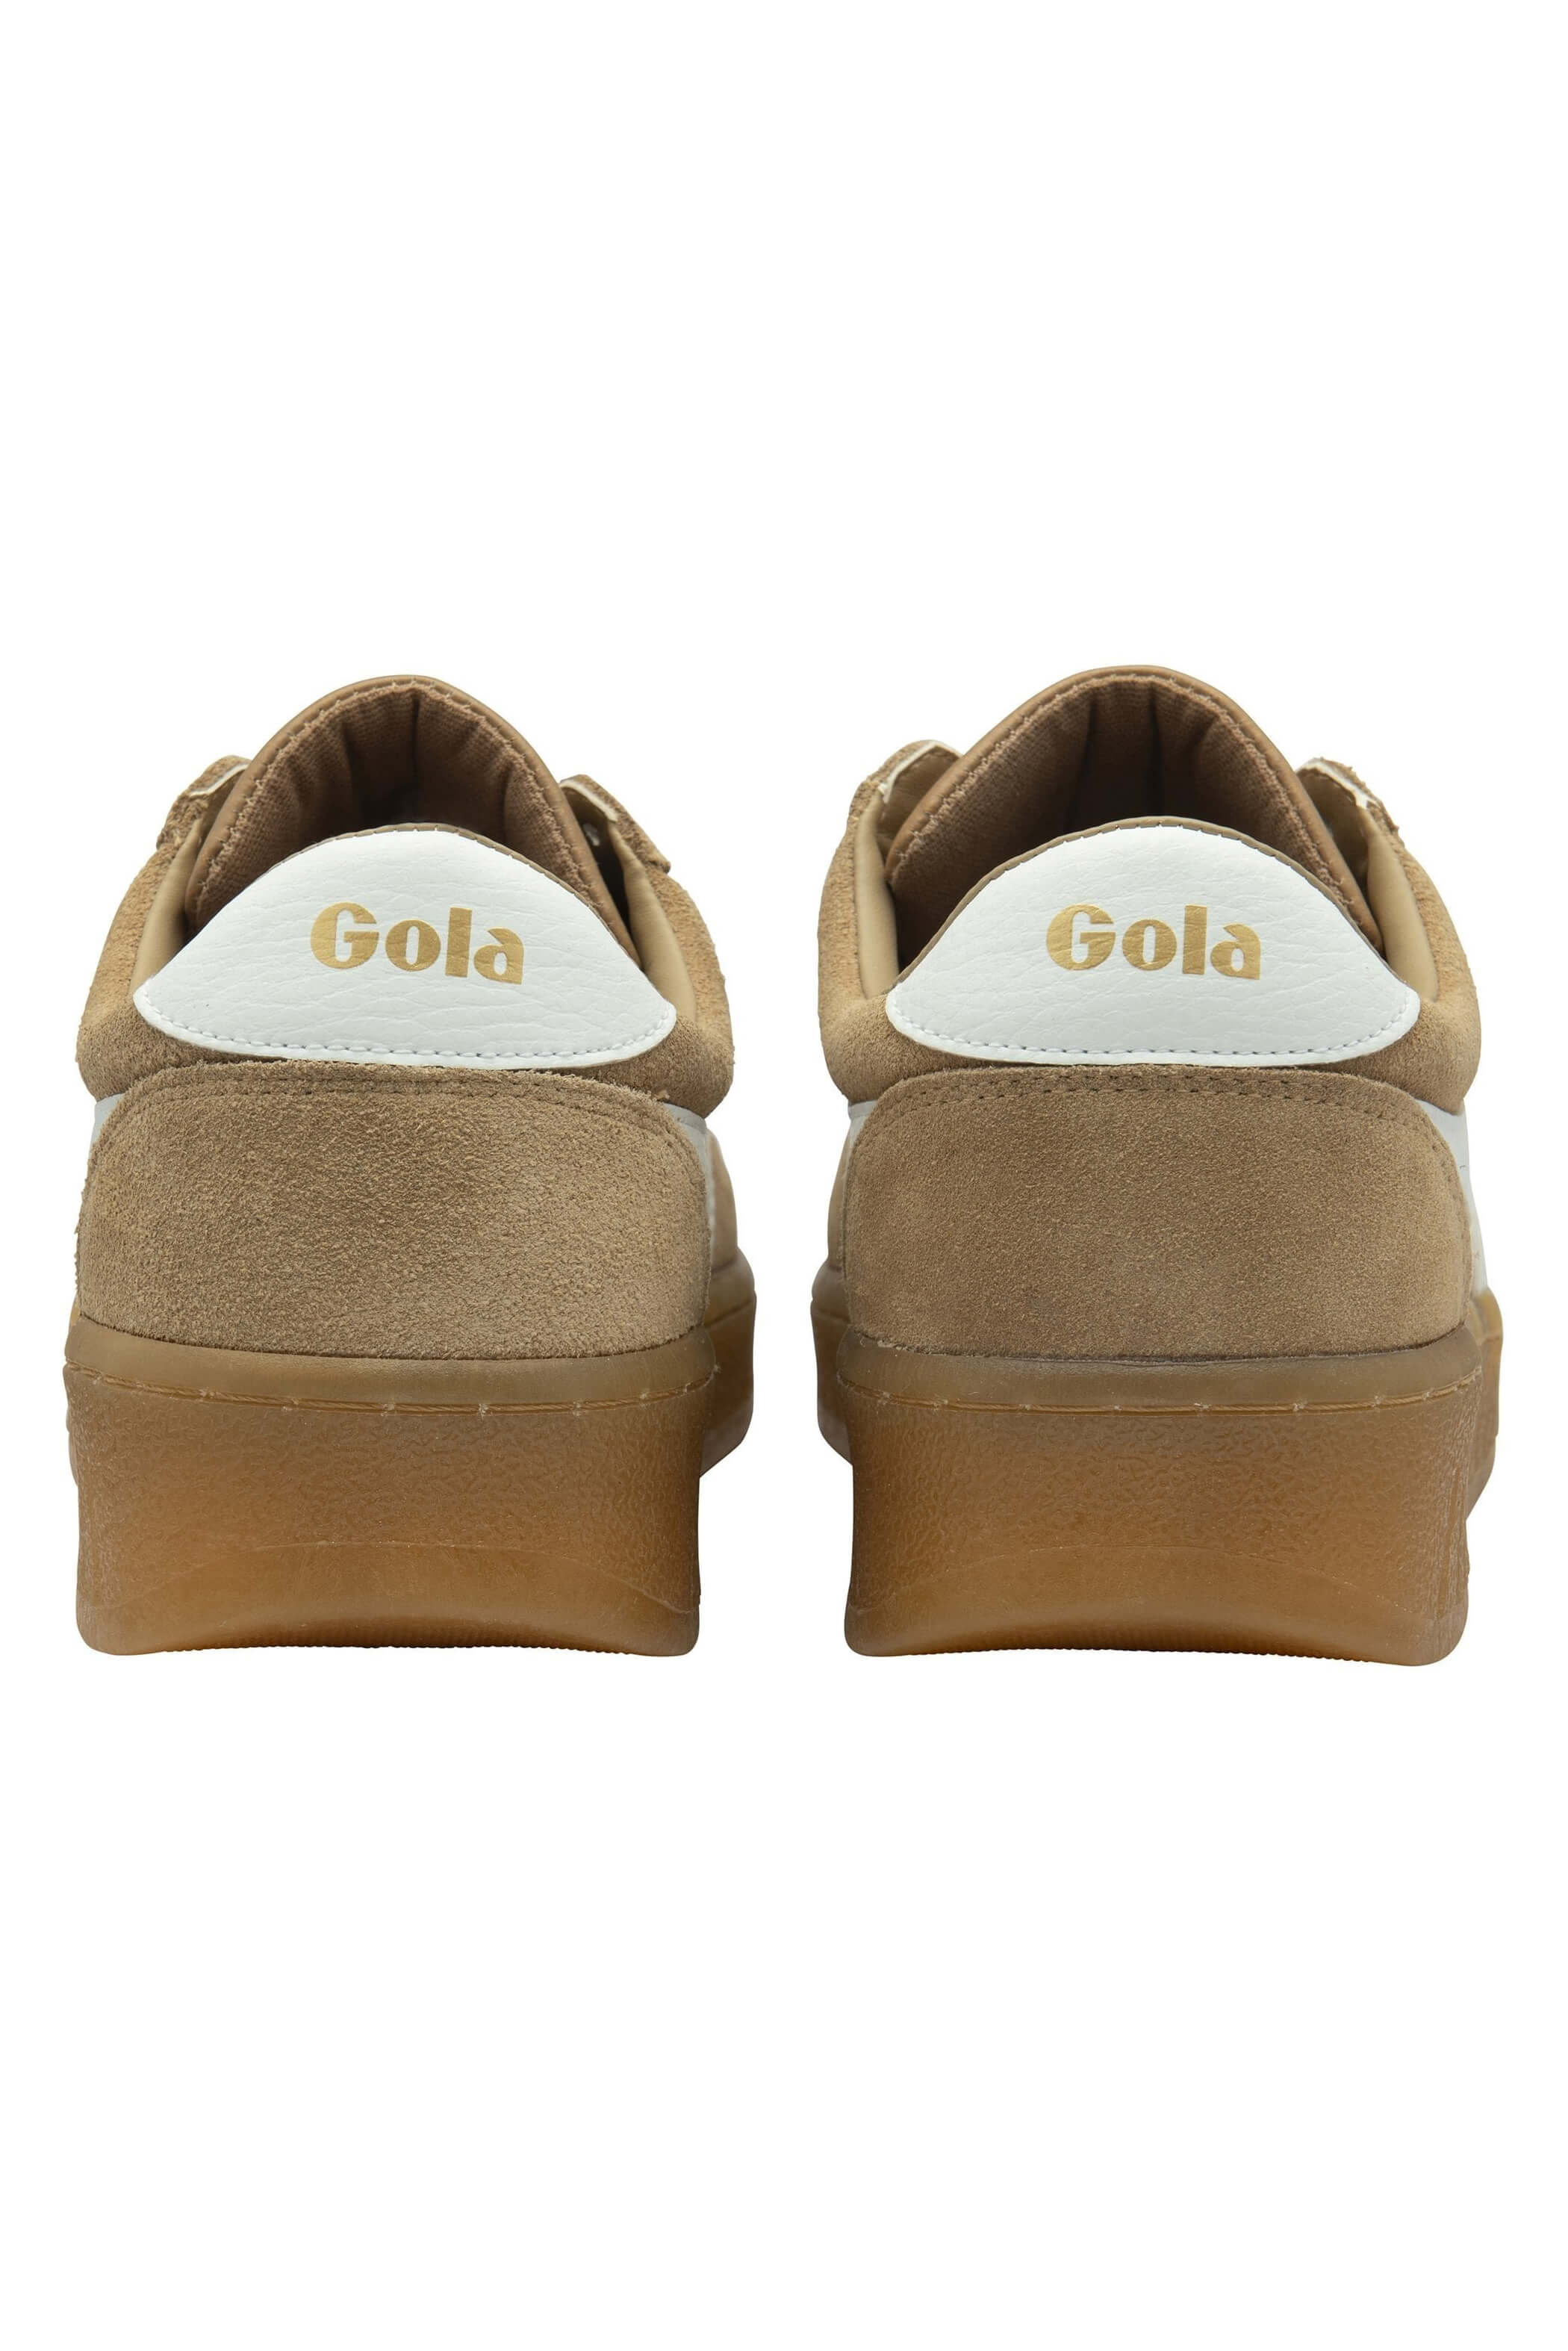 Gola grandslam shoe in light caramel white gum